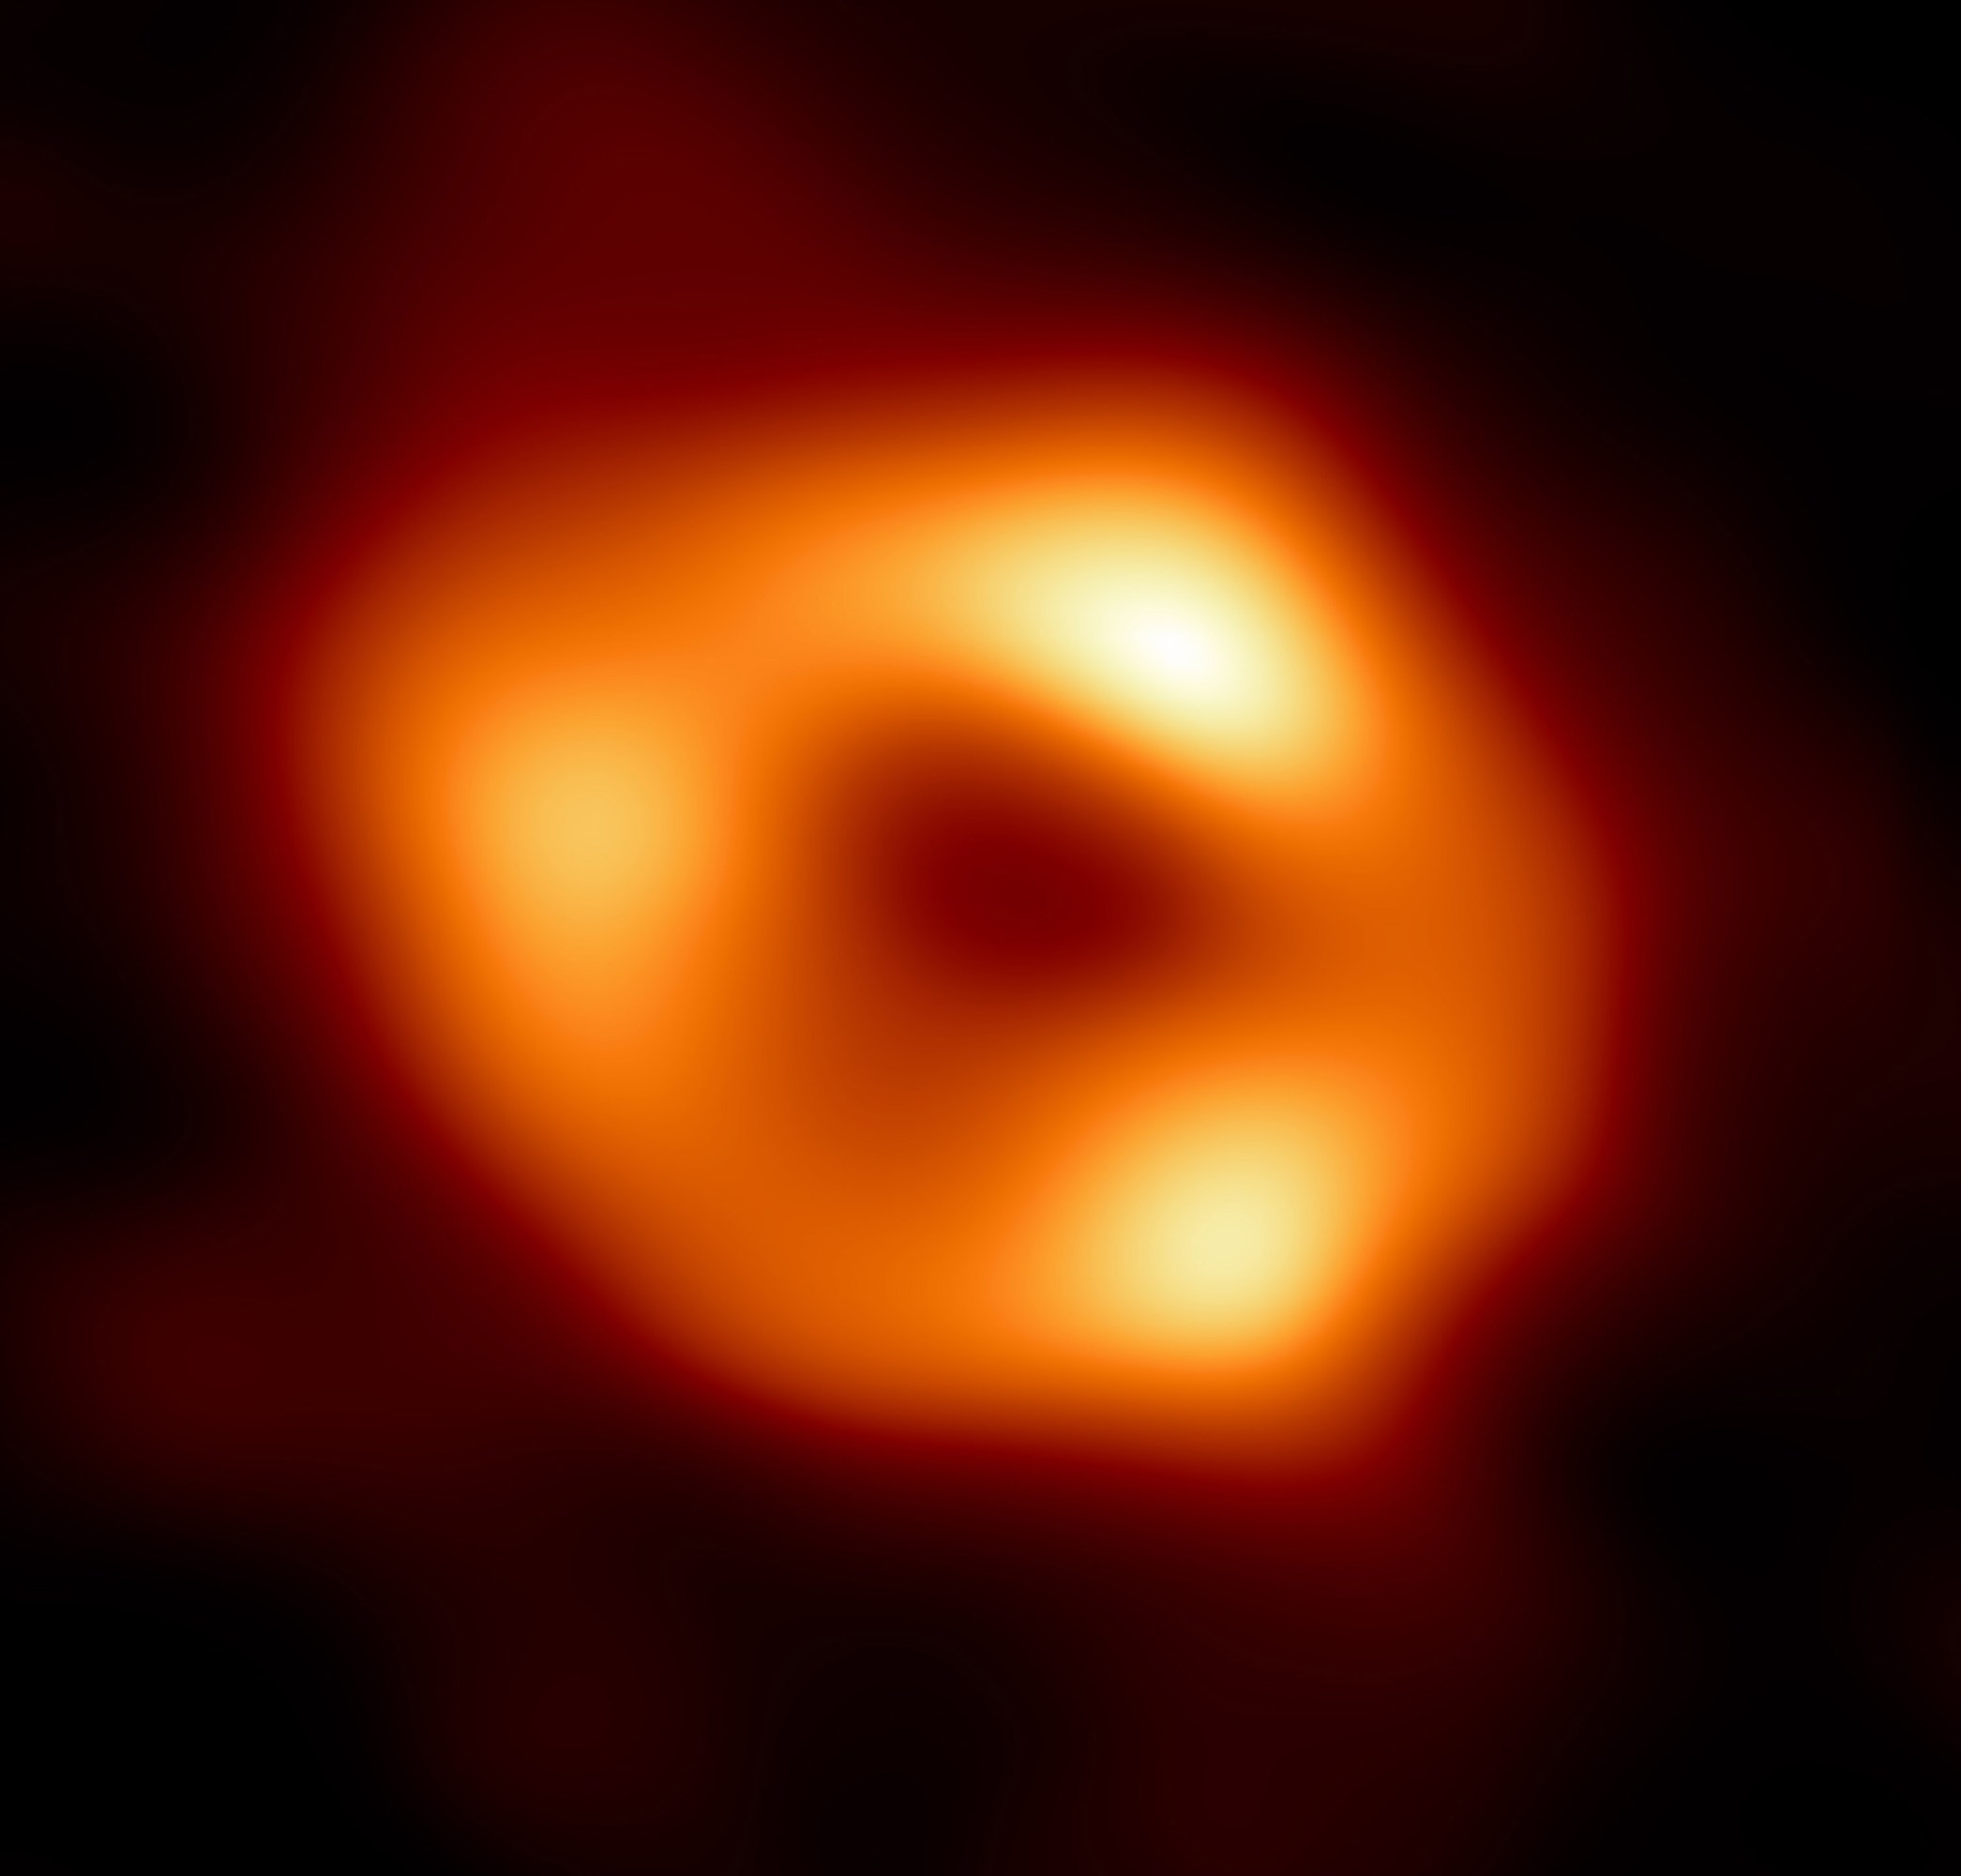 Agujero negro supermasivo en el centro de la Vía Láctea